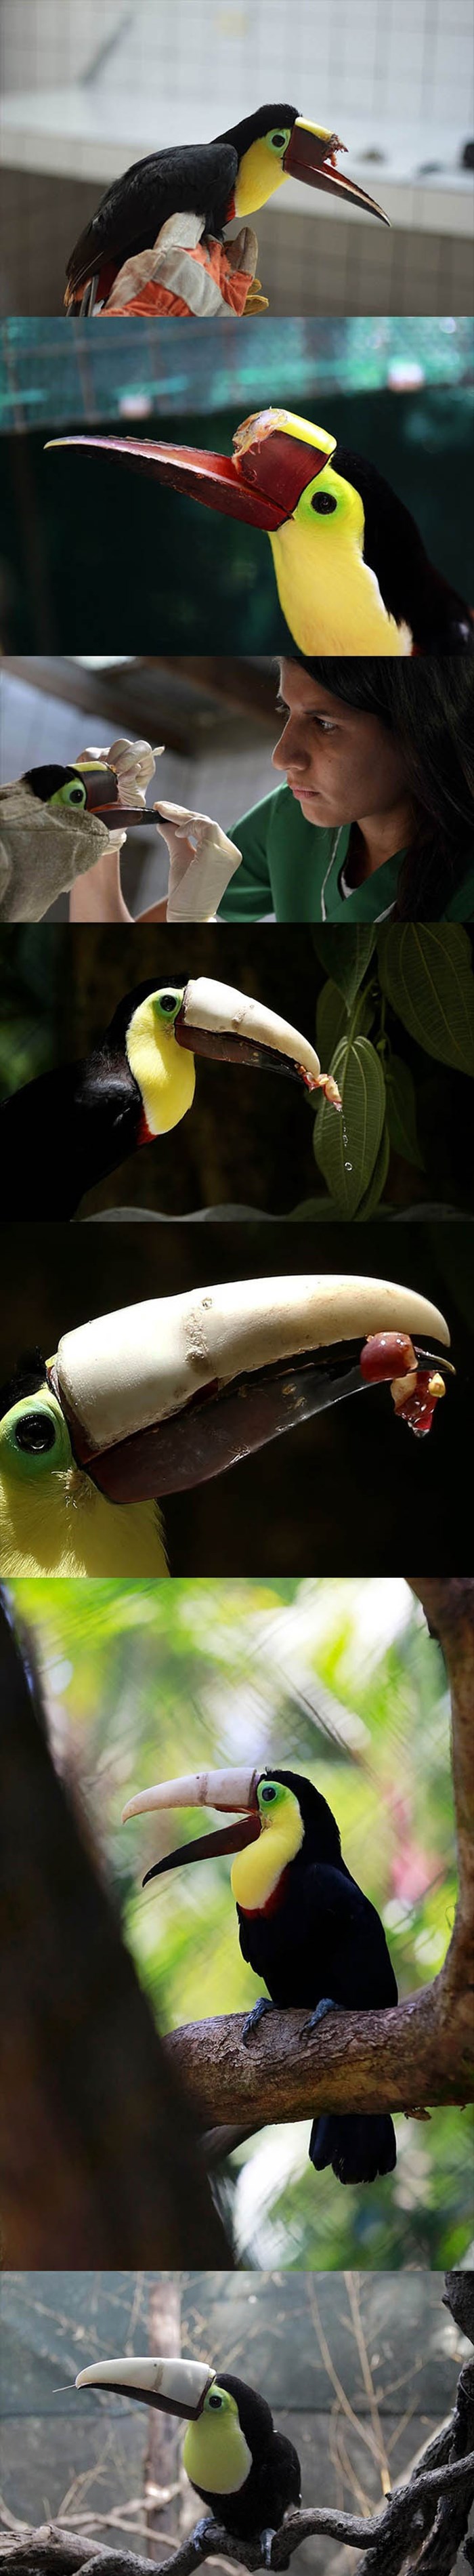 GALERIJA: Ptica dobila novi 3D isprintani kljun